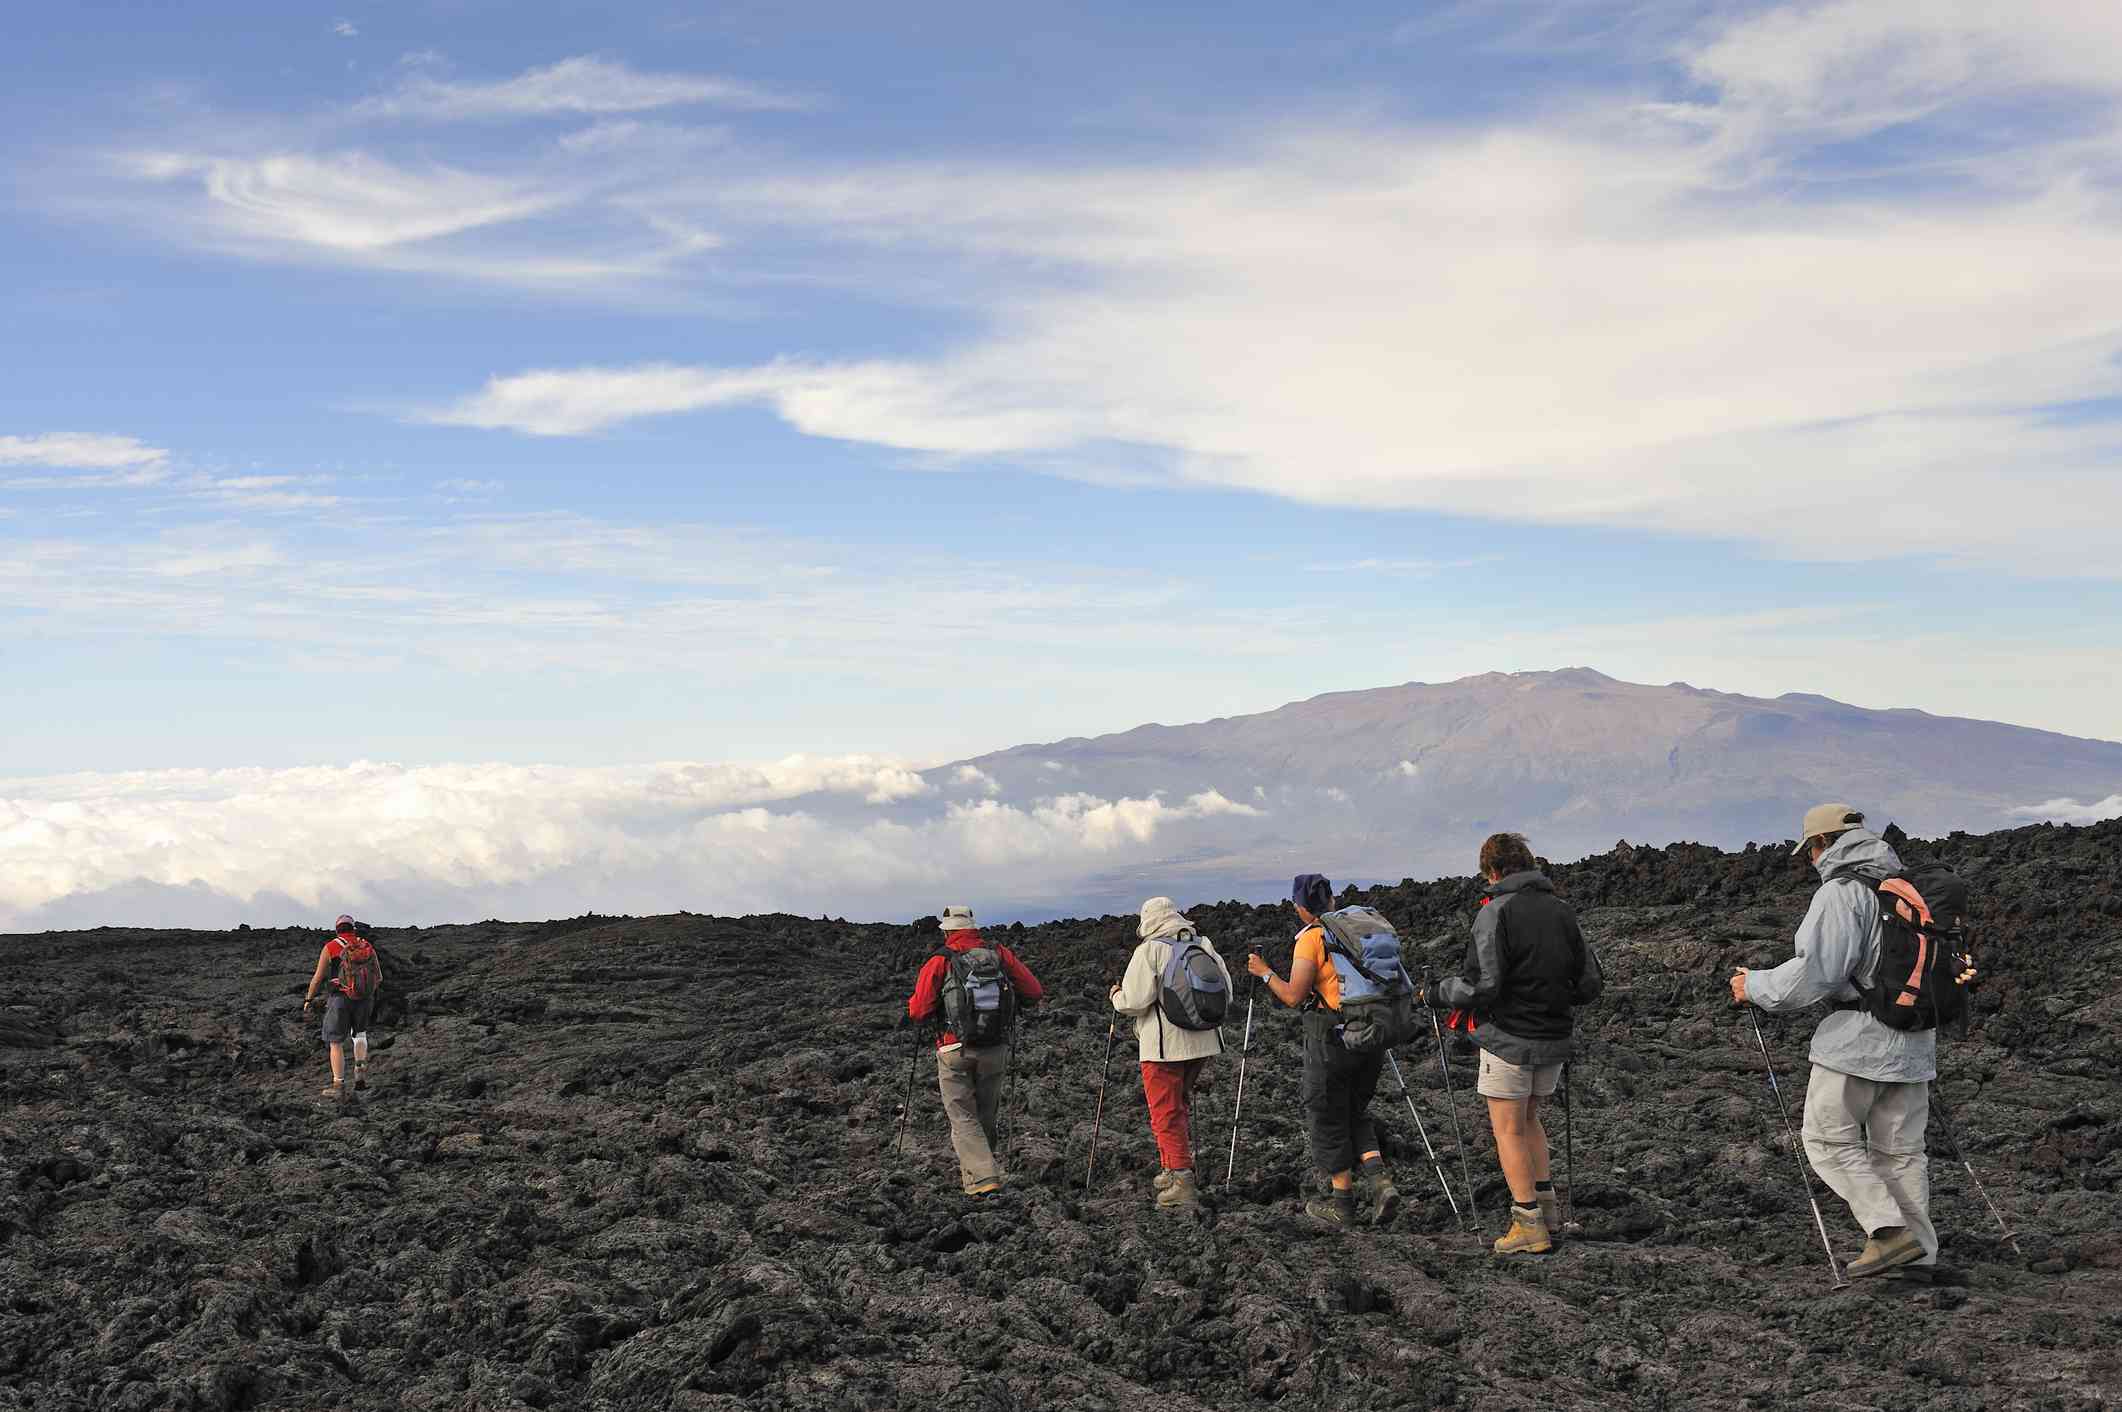 Personas caminando sobre lava enfriada; el volcán Mauna Loa al fondo